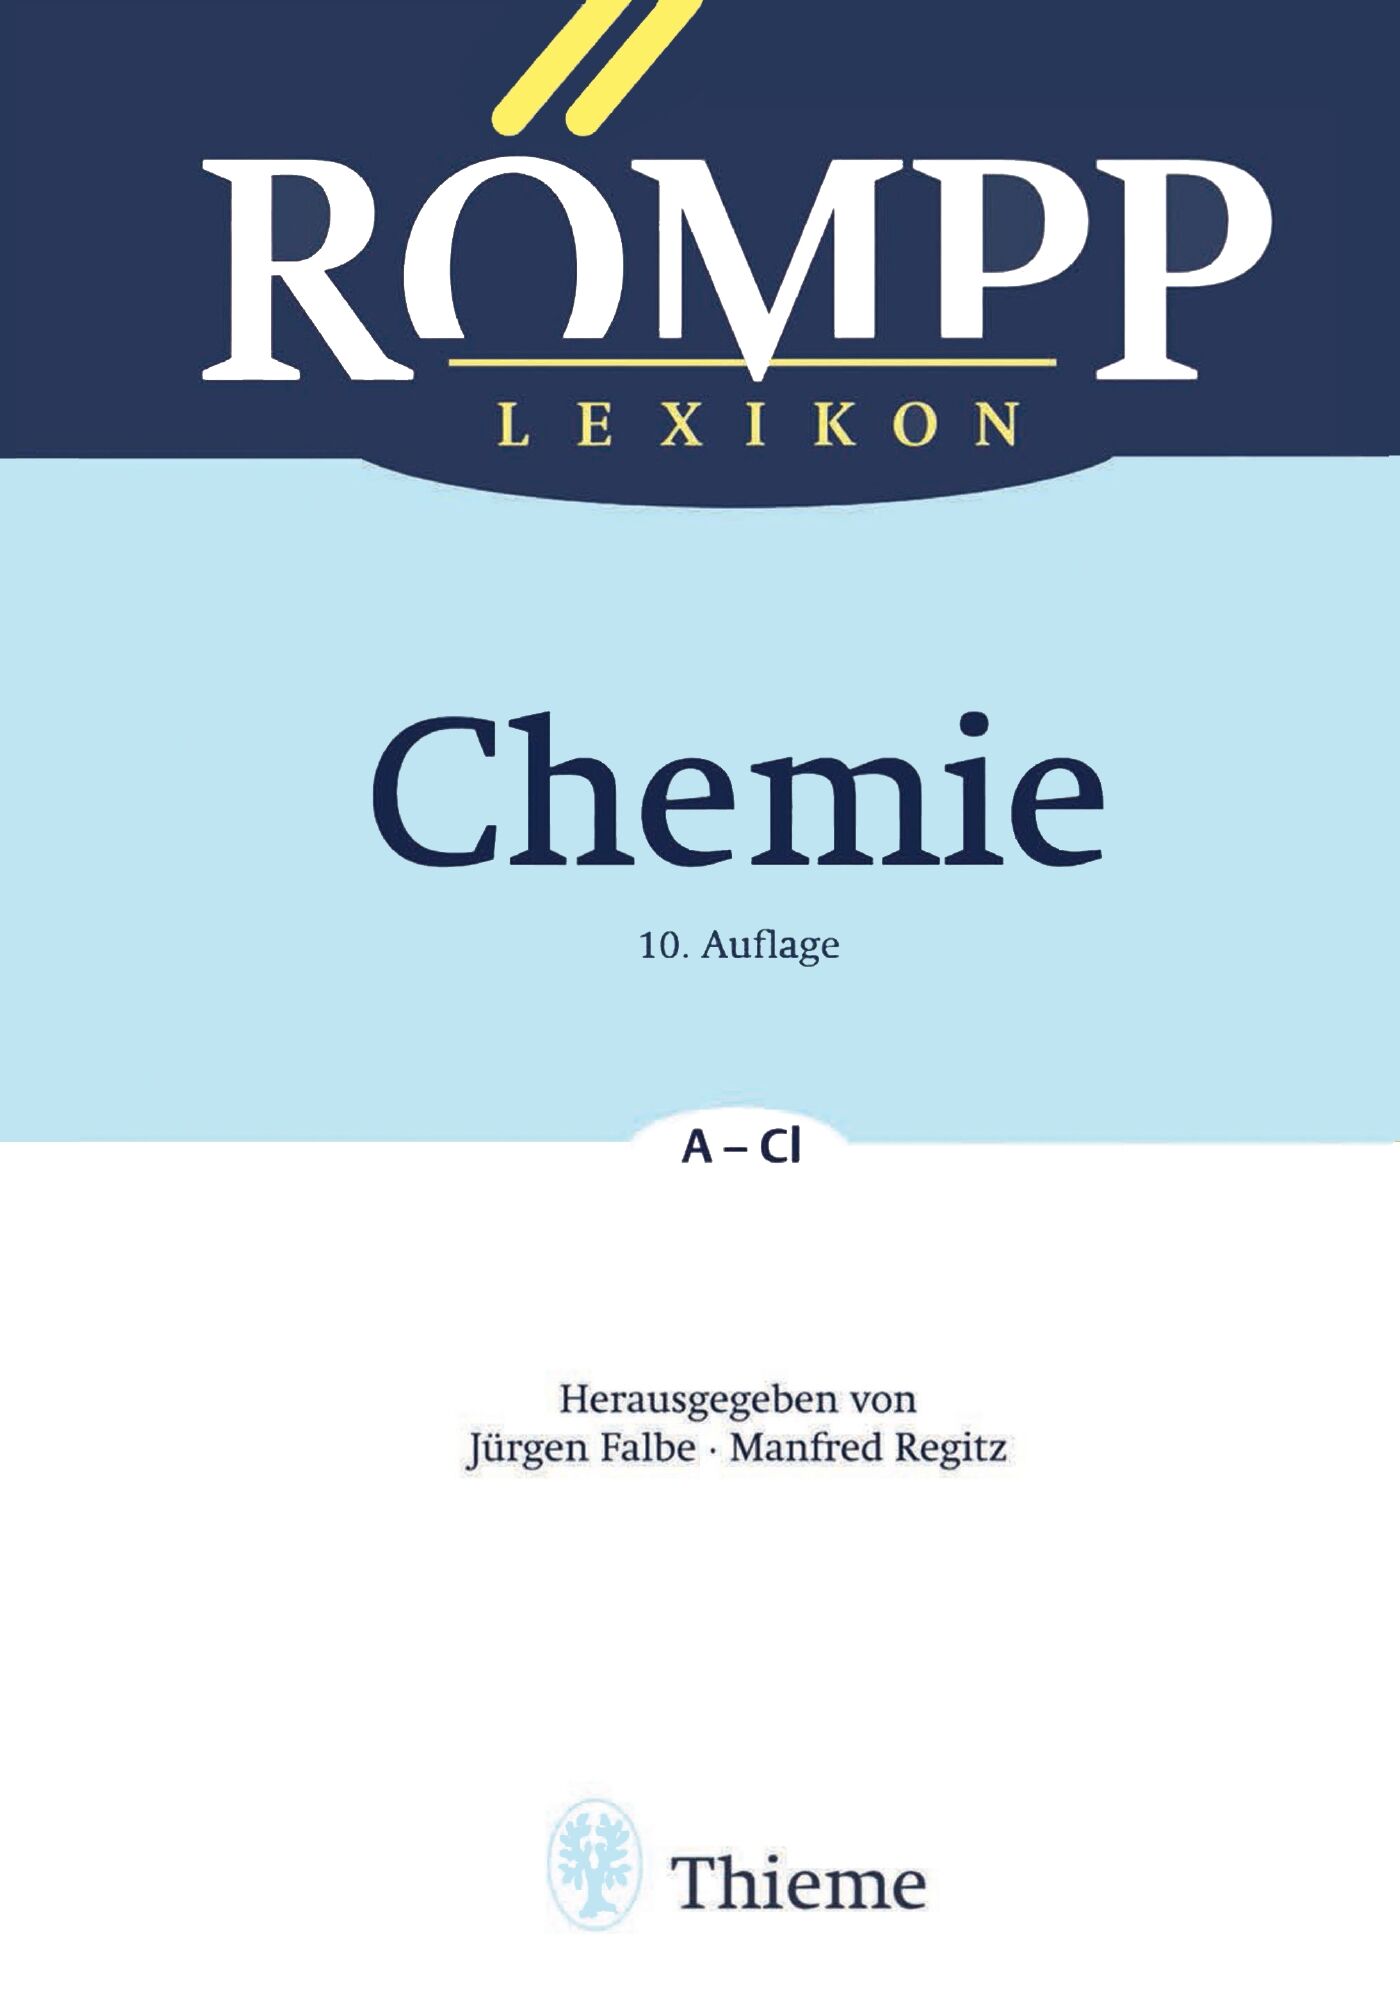 RÖMPP Lexikon Chemie, 10. Auflage, 1996-1999, 9783131999610